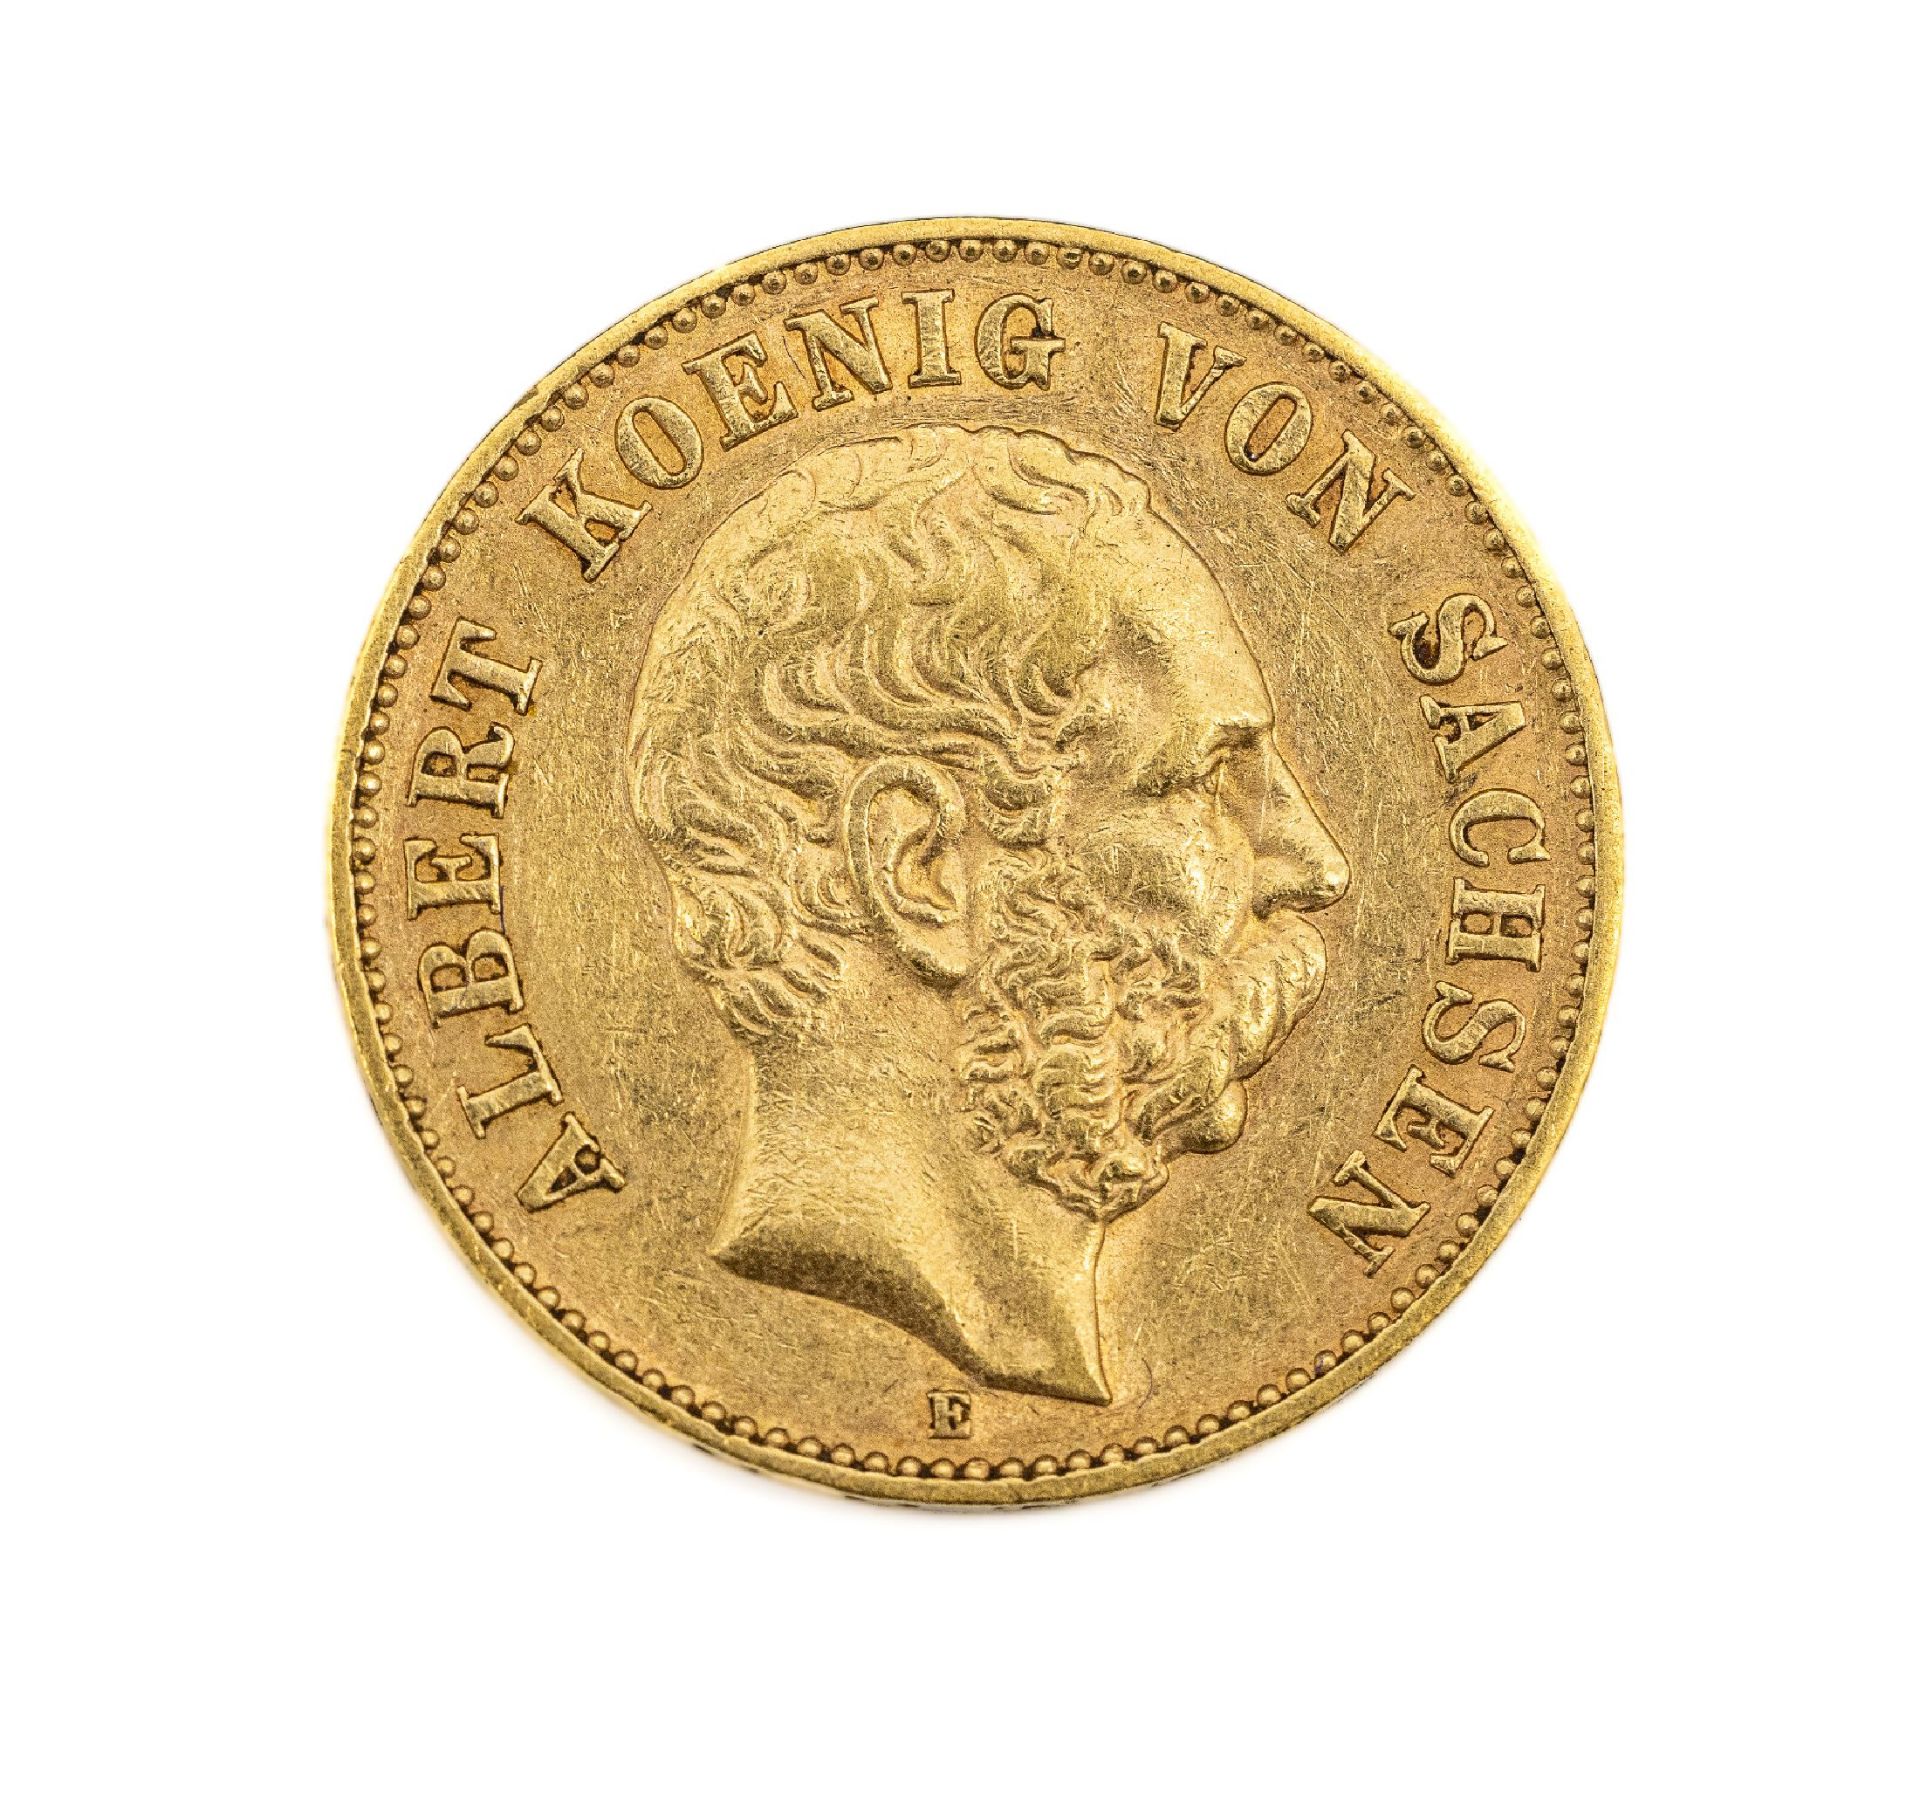 Goldmünze 20 Mark Deutsches Reich 1894, Albert König von